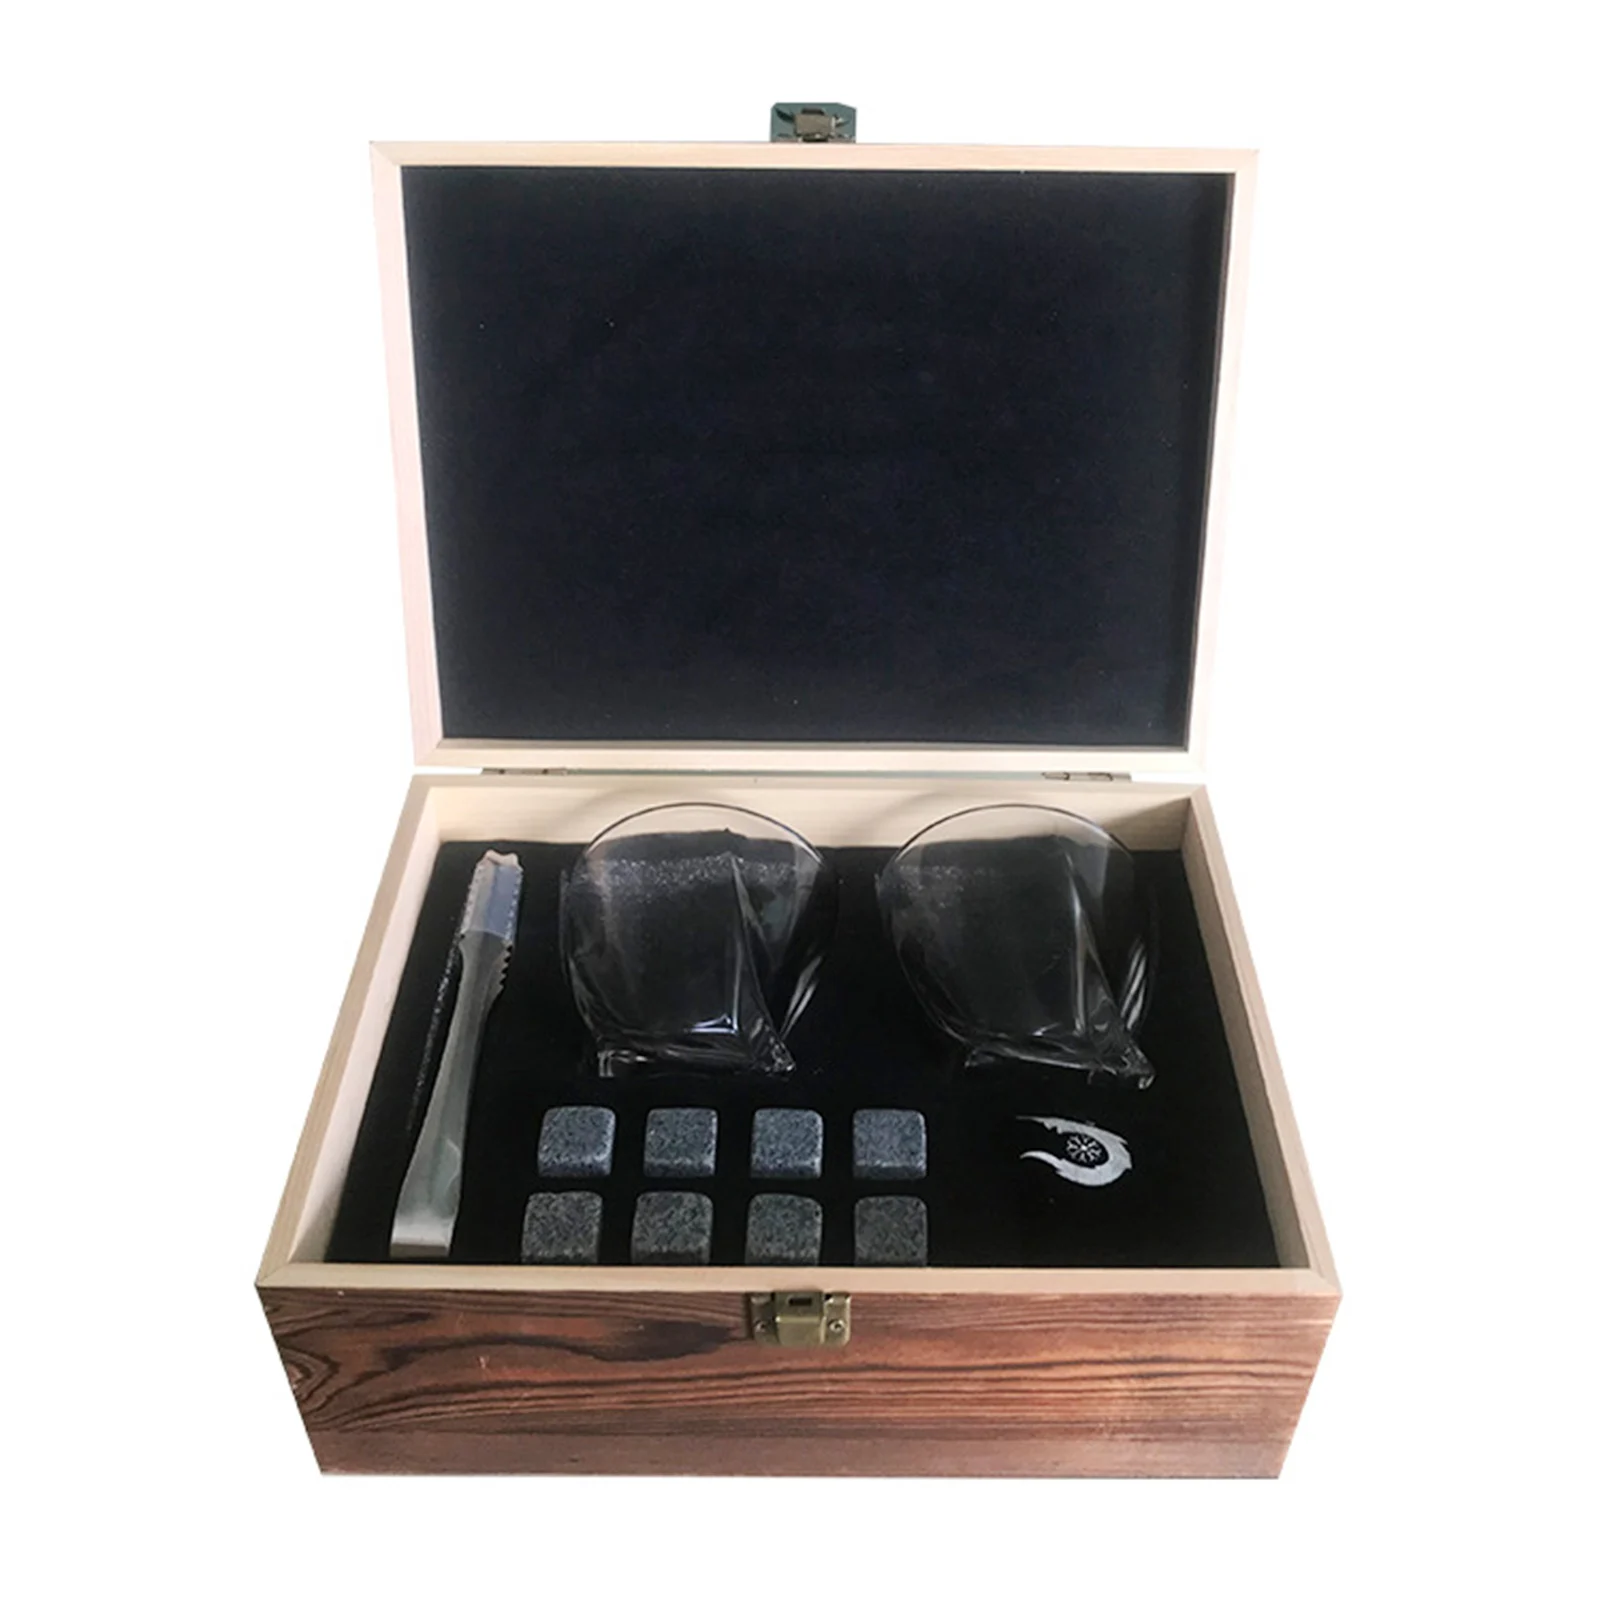 

Набор из 9 камней и 2 стакана для виски в деревянной подарочной коробке